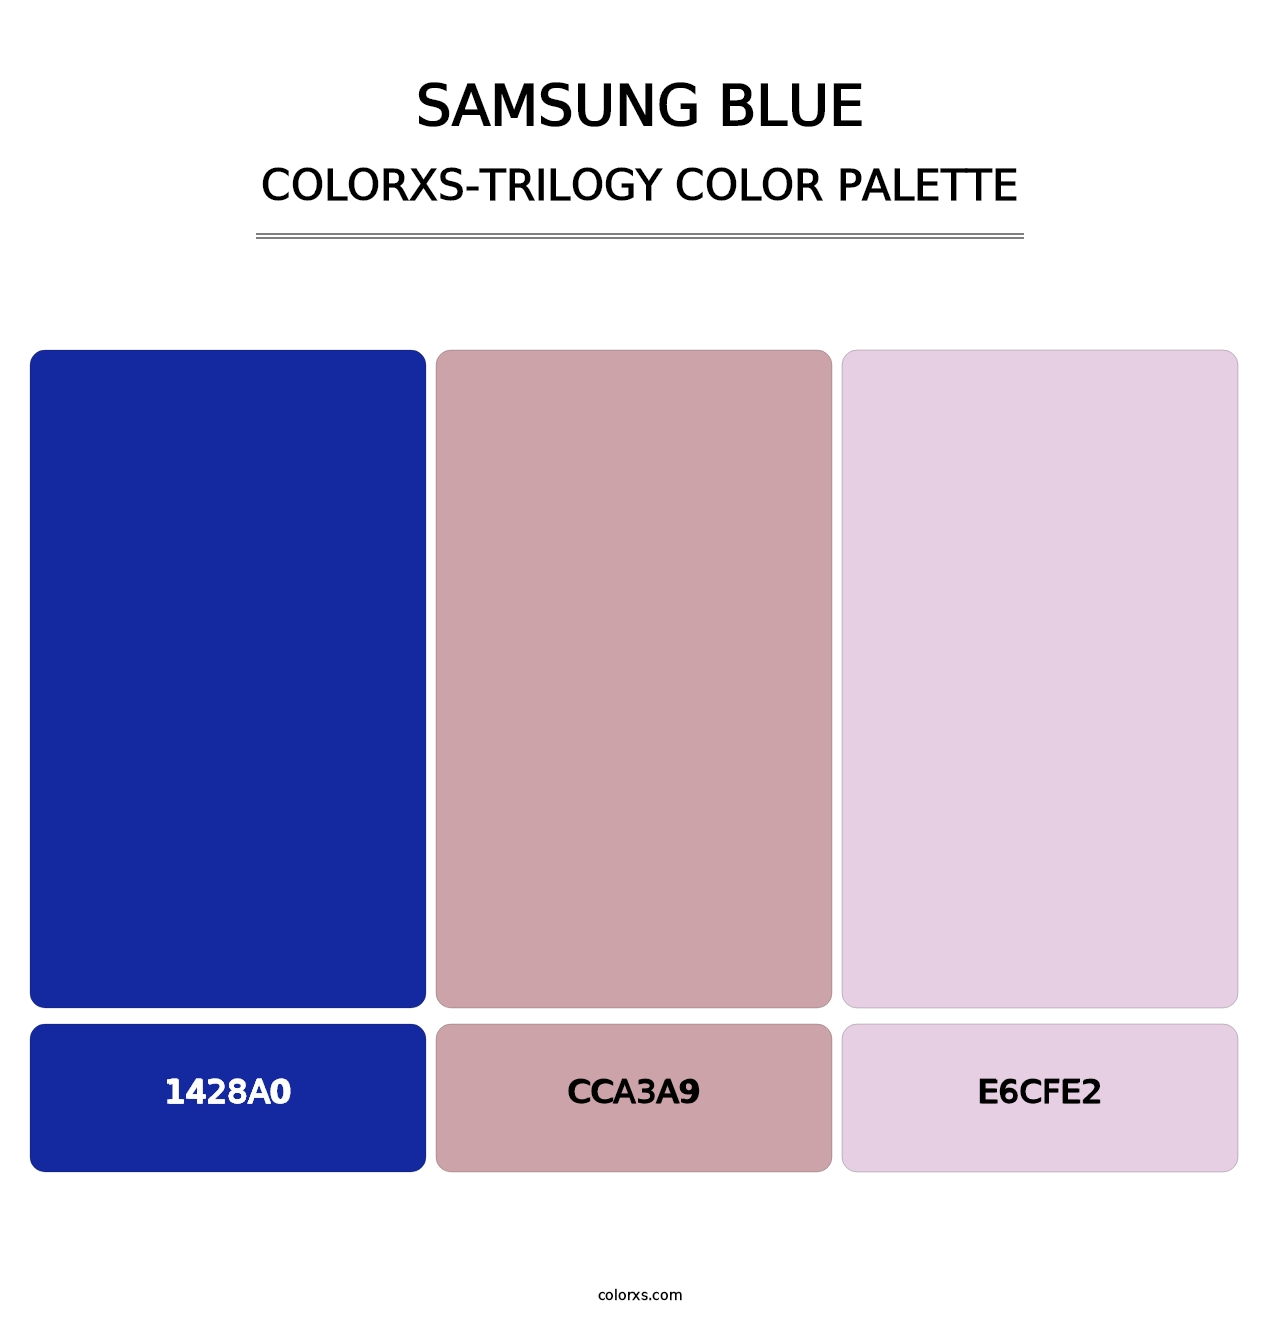 Samsung Blue - Colorxs Trilogy Palette